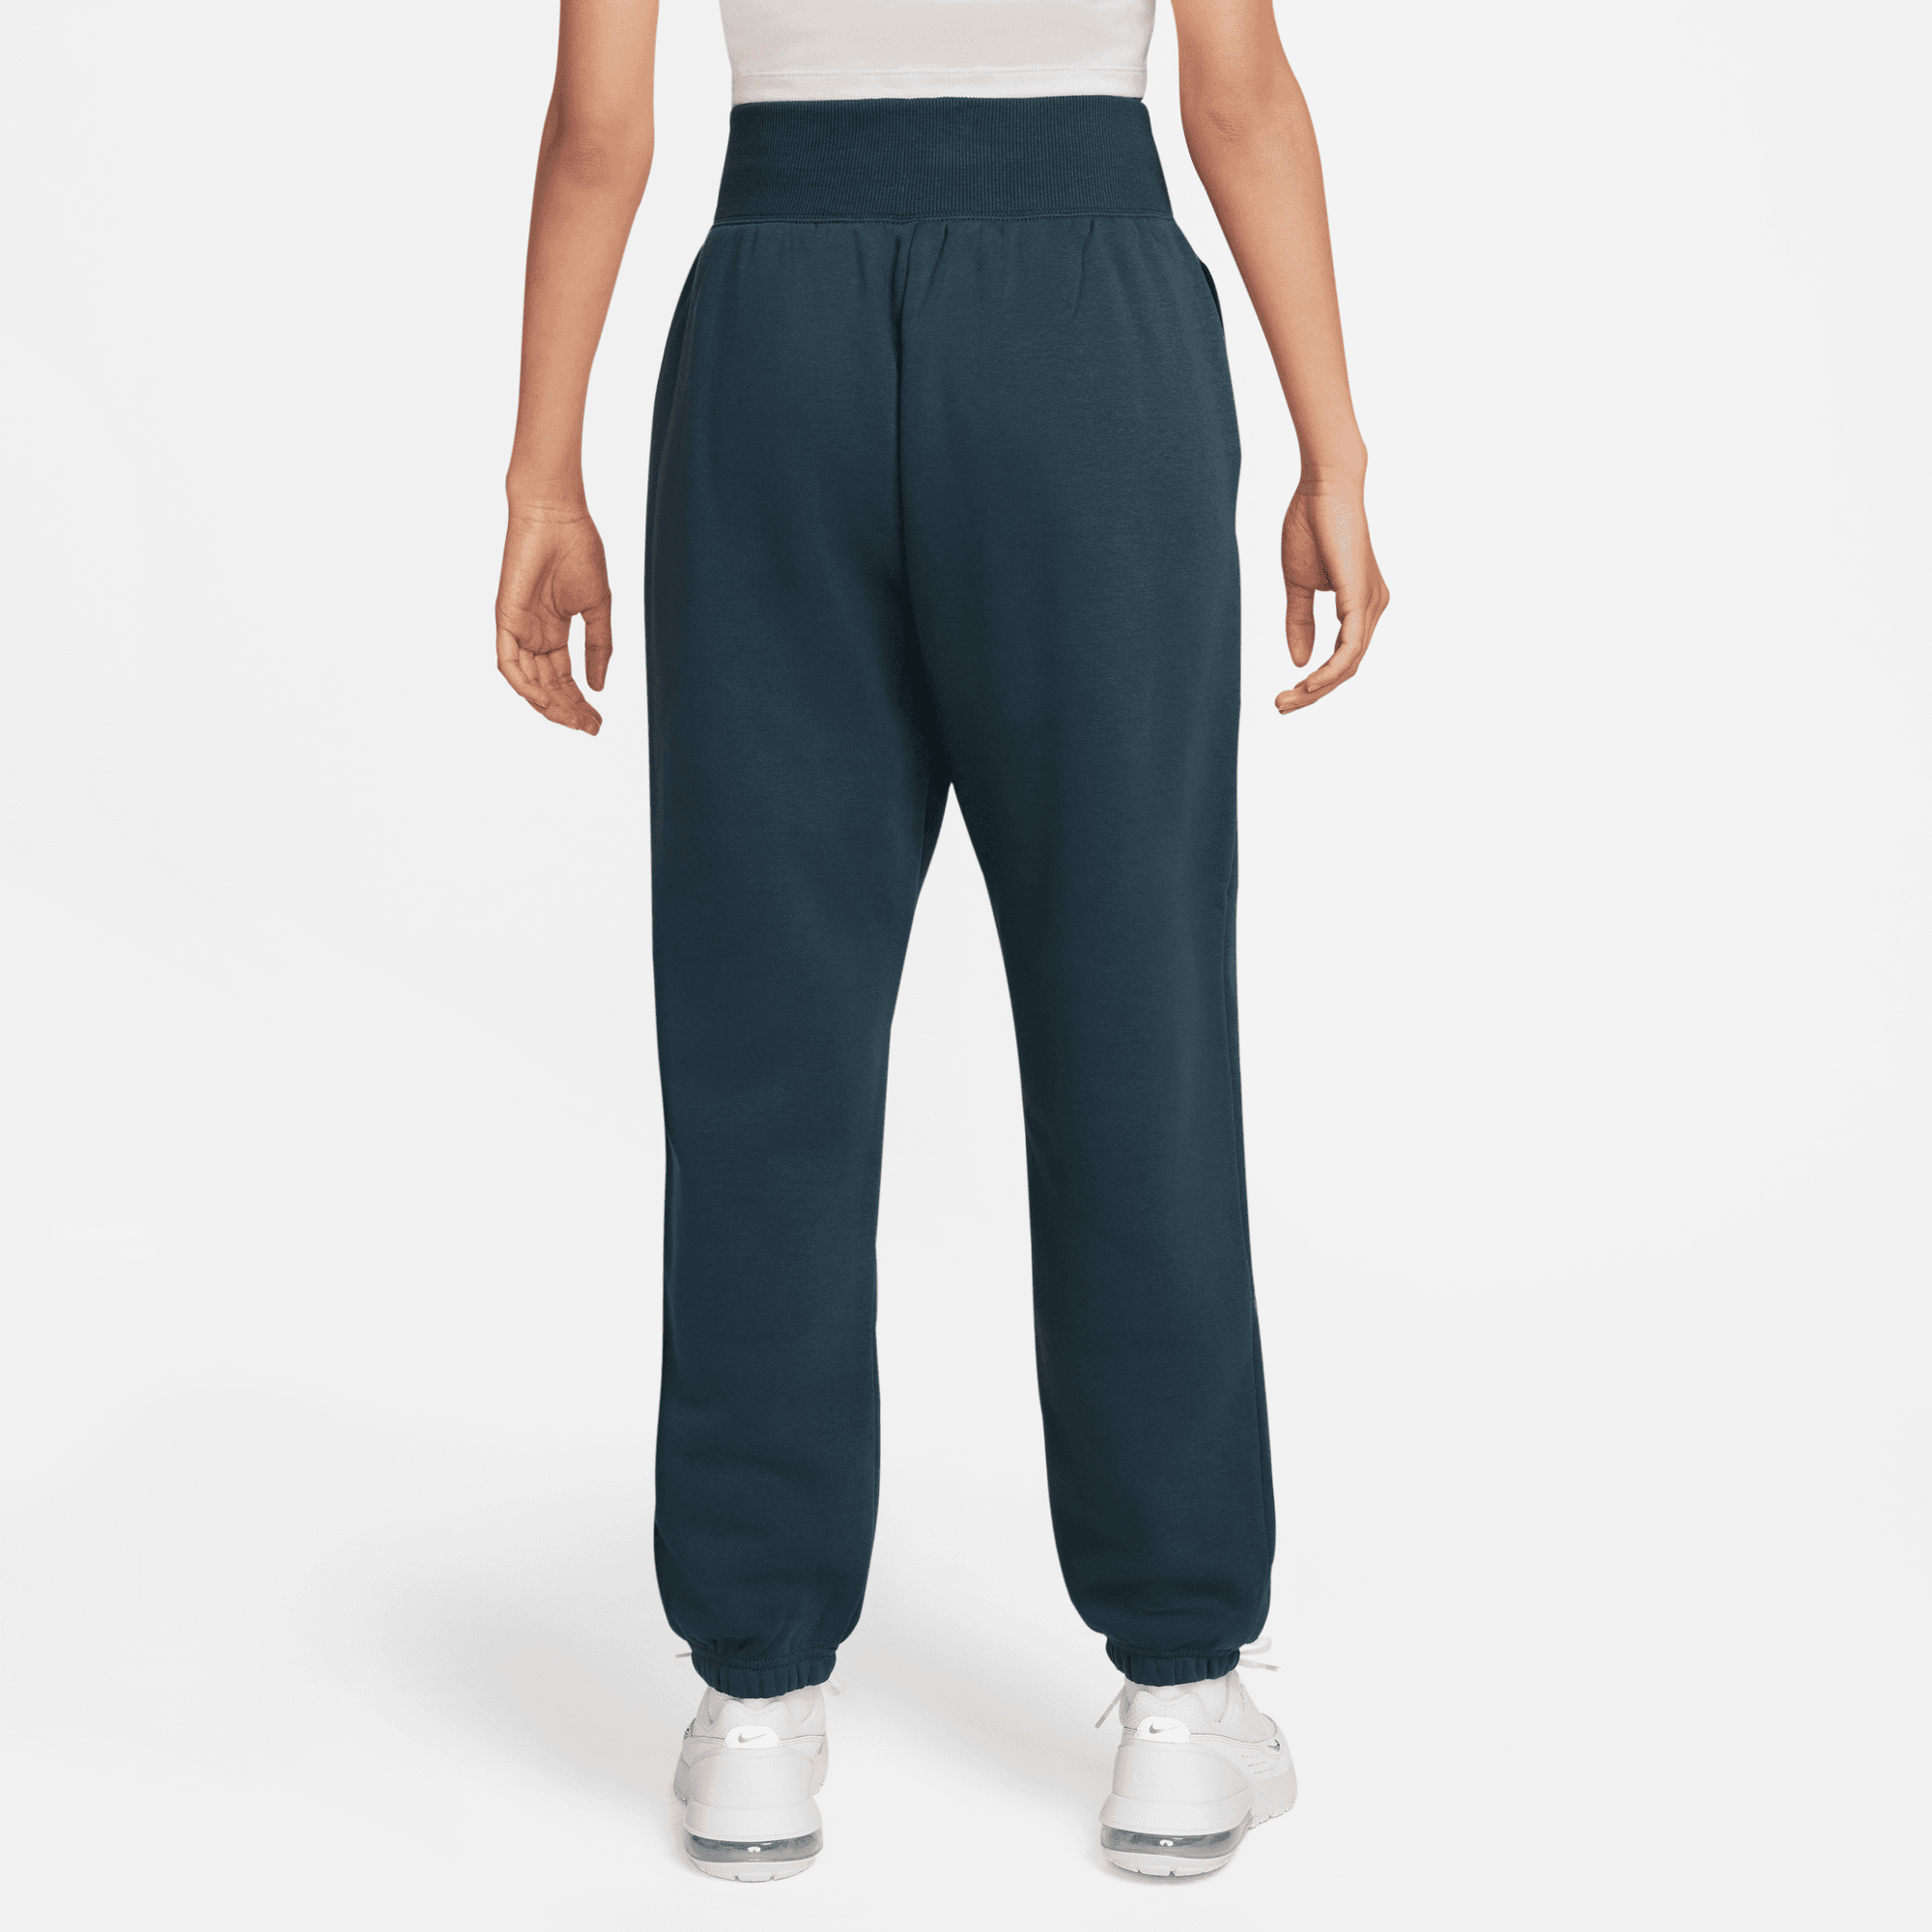 Nike Sportswear Women's Green High-Waisted Oversized Fleece Sweatpants